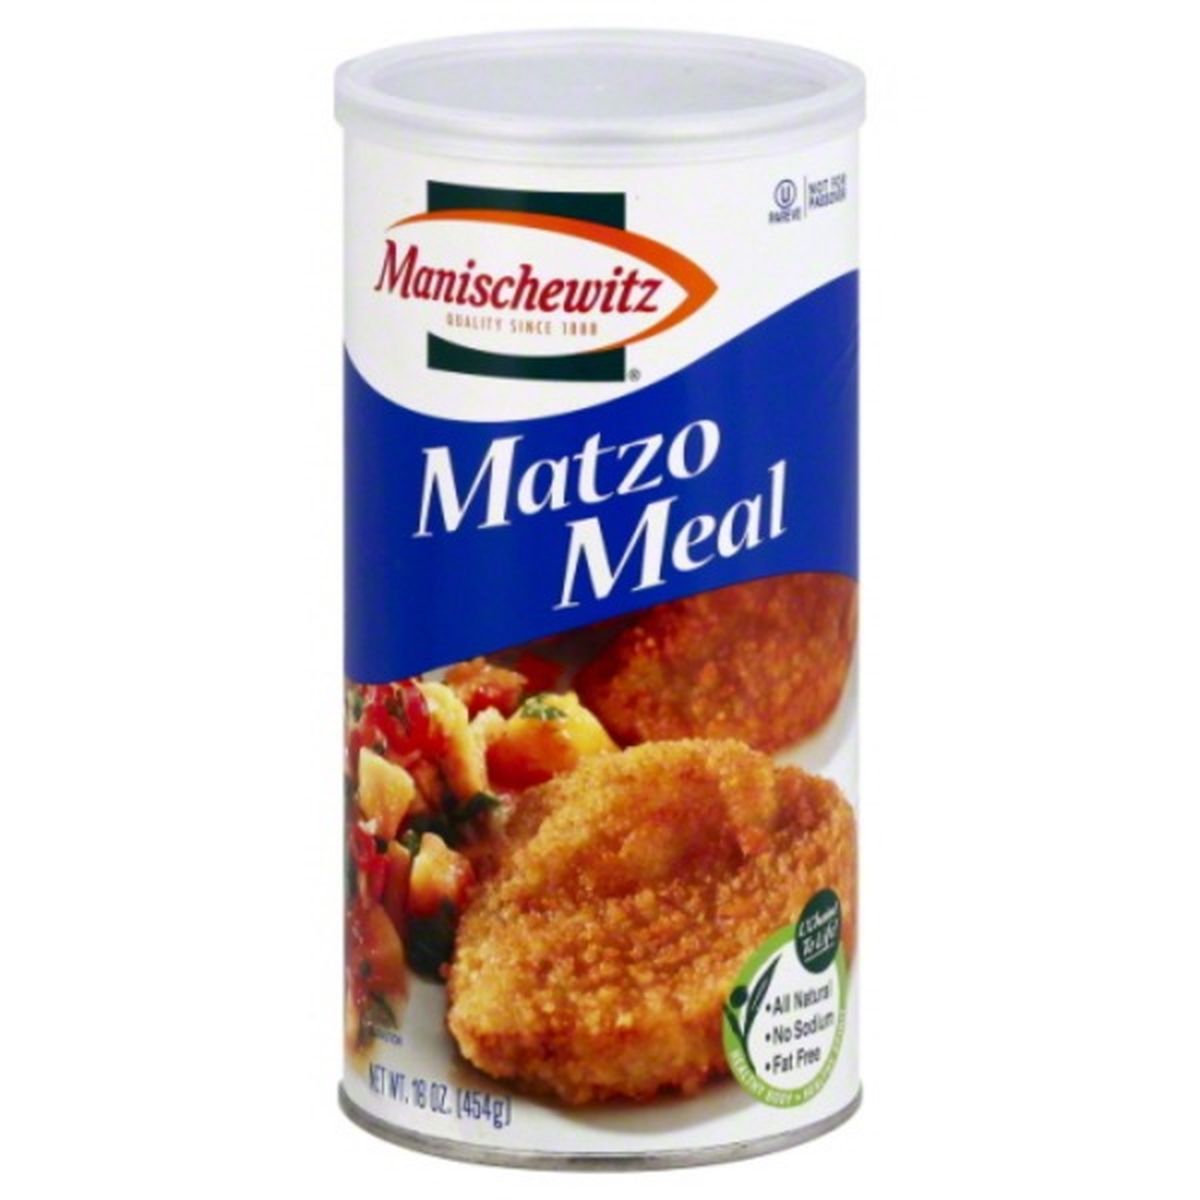 Calories in Manischewitz Matzo Meal